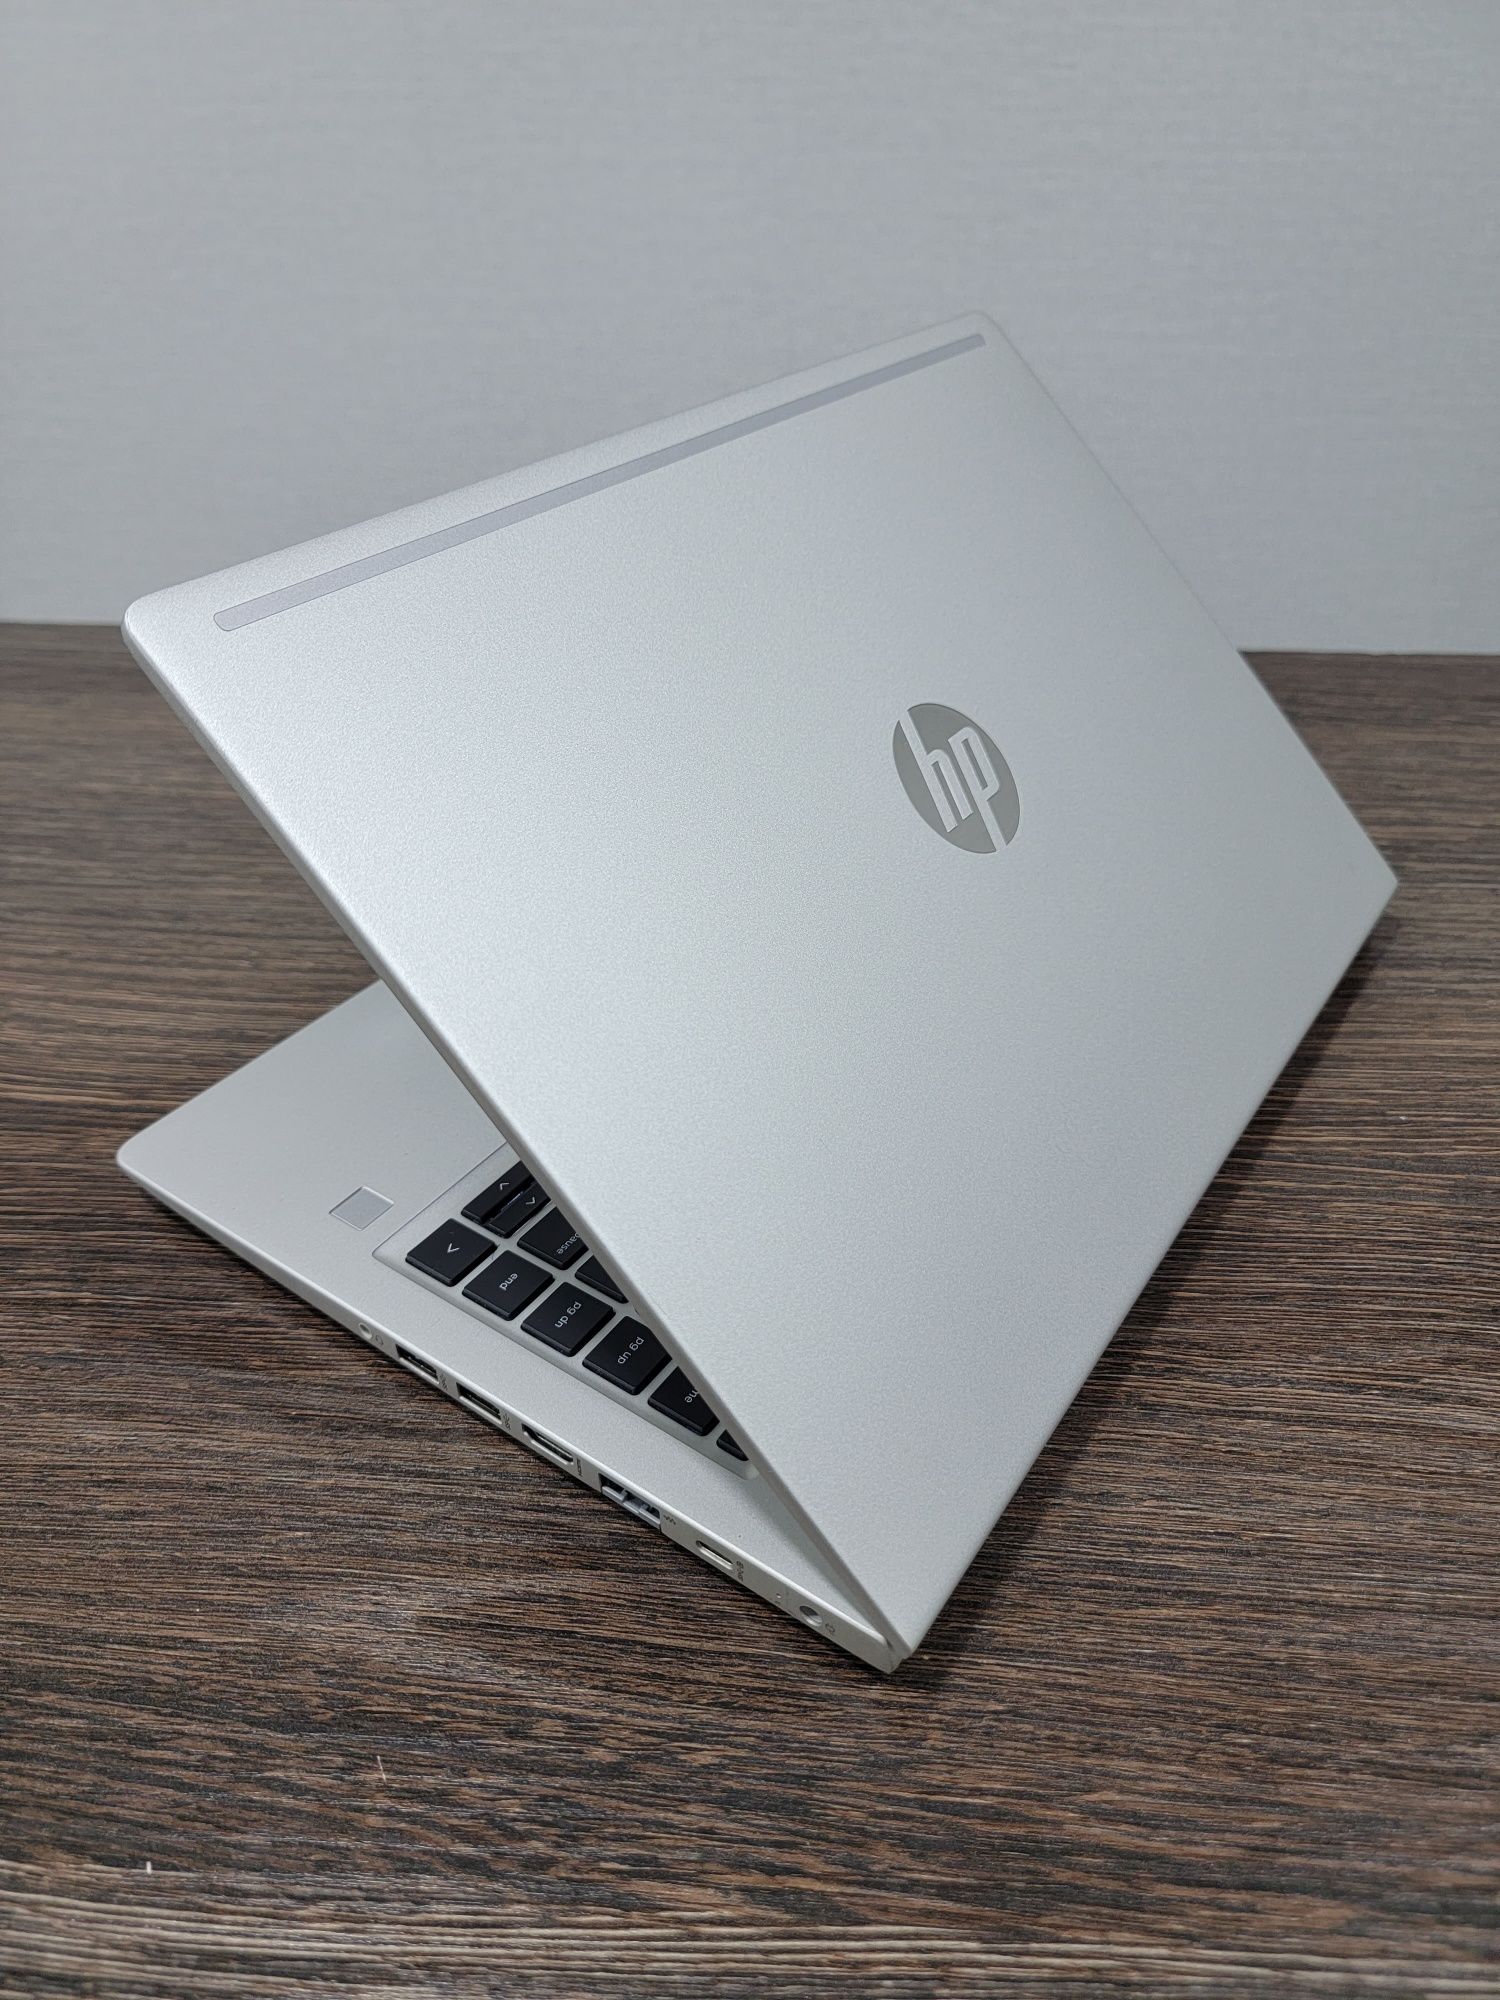 мощный Ryzen 5 бизнесбук HP ProBook 445 G7, подсветка клавиатуры